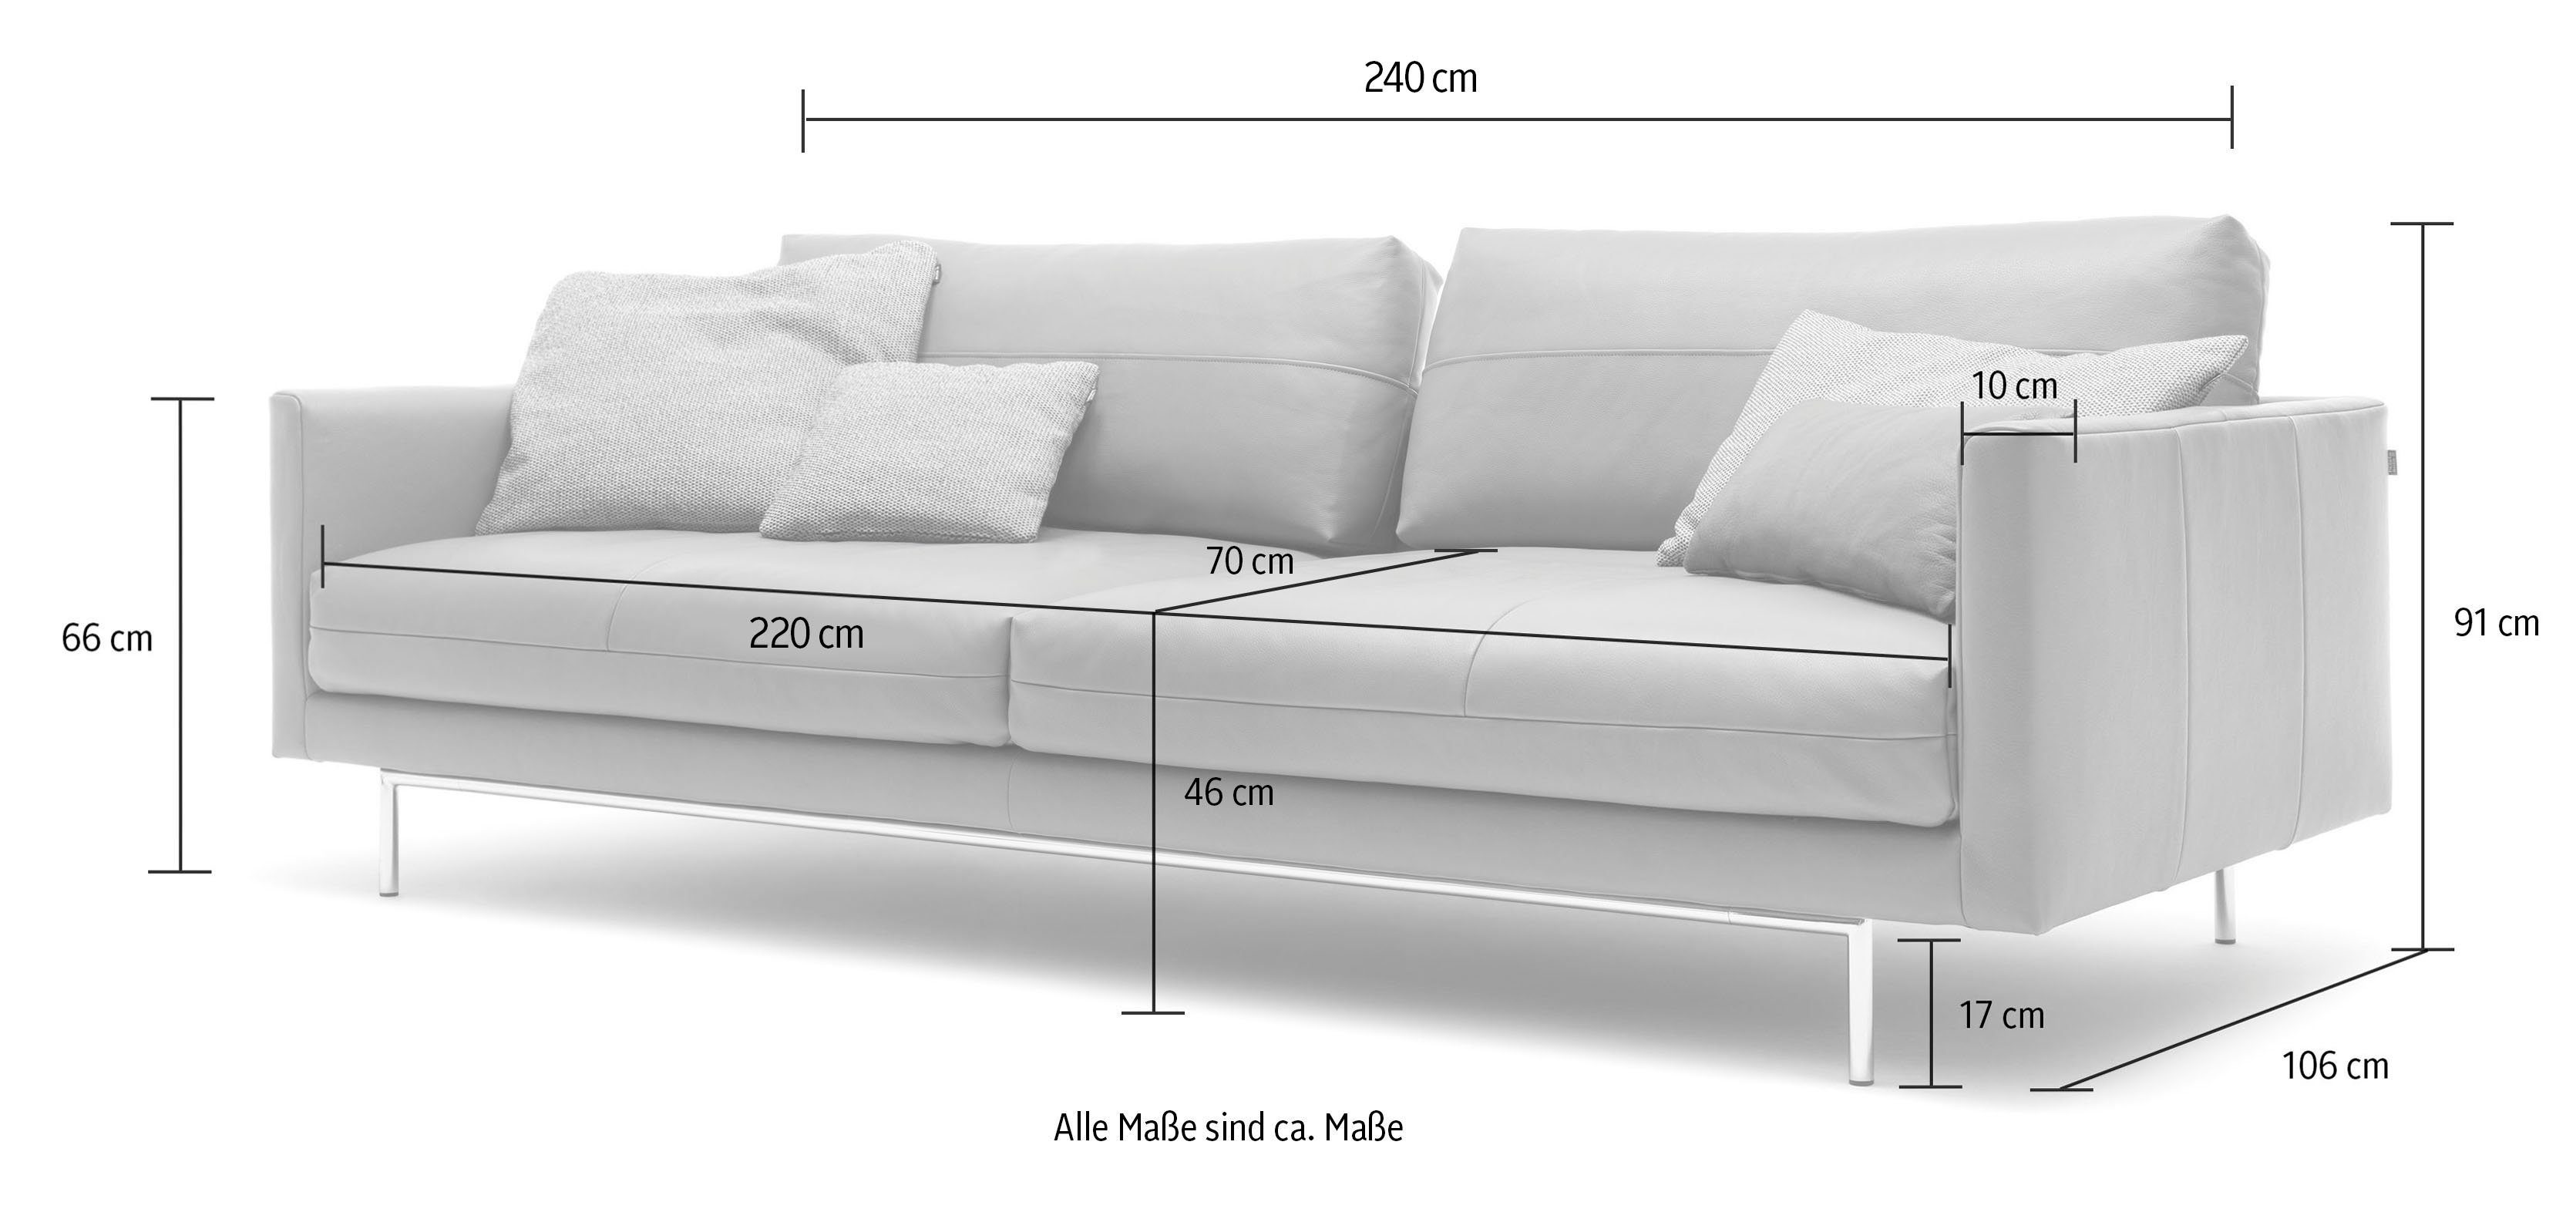 hülsta sofa 4-Sitzer seidengrau seidengrau 